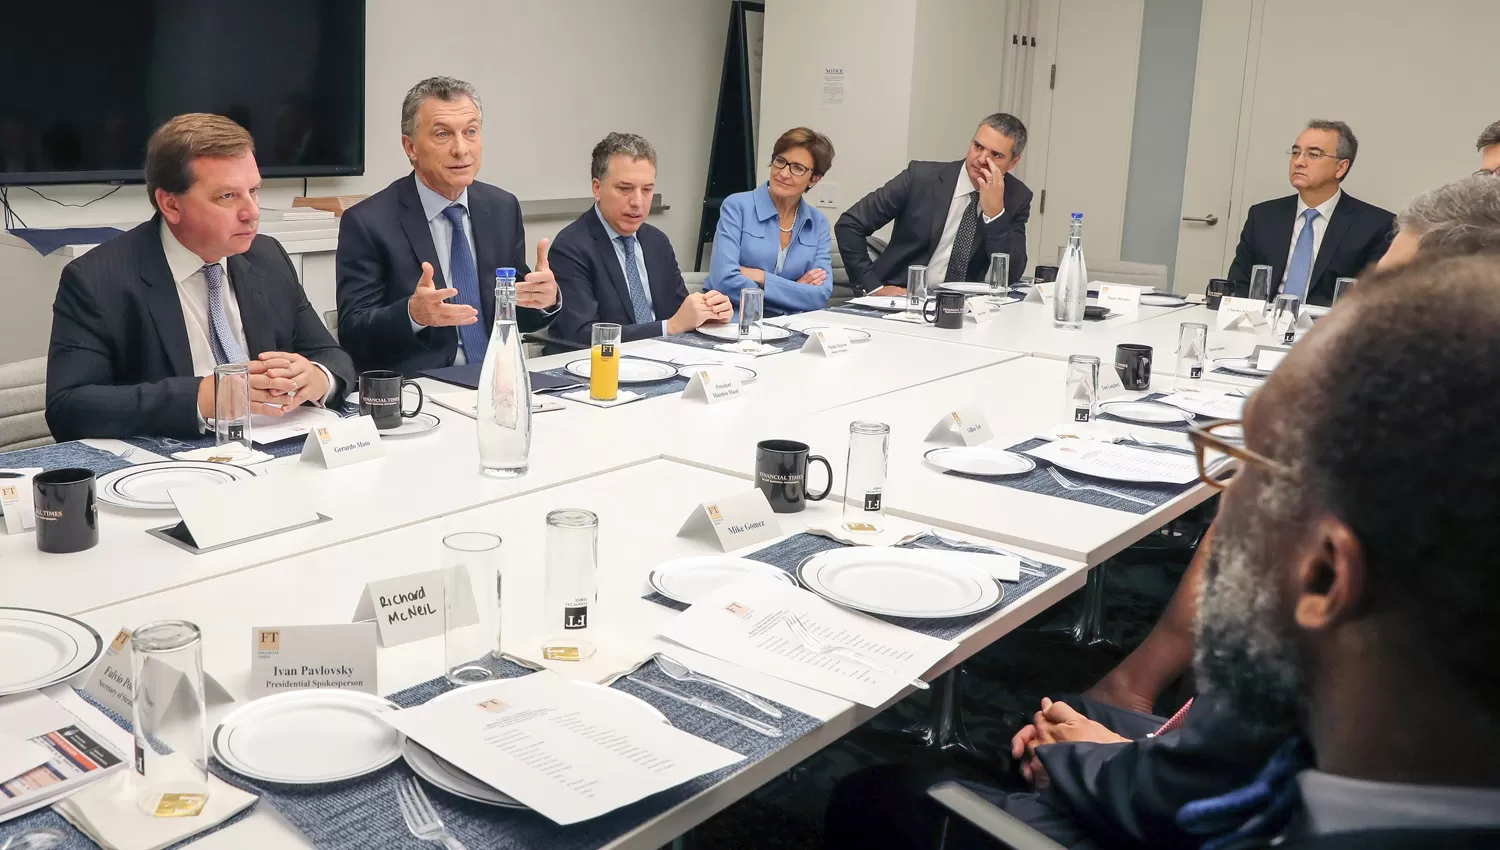 CON INVERSORES. Macri mantuvo una ronda de reuniones en las oficinas de Financial Times.